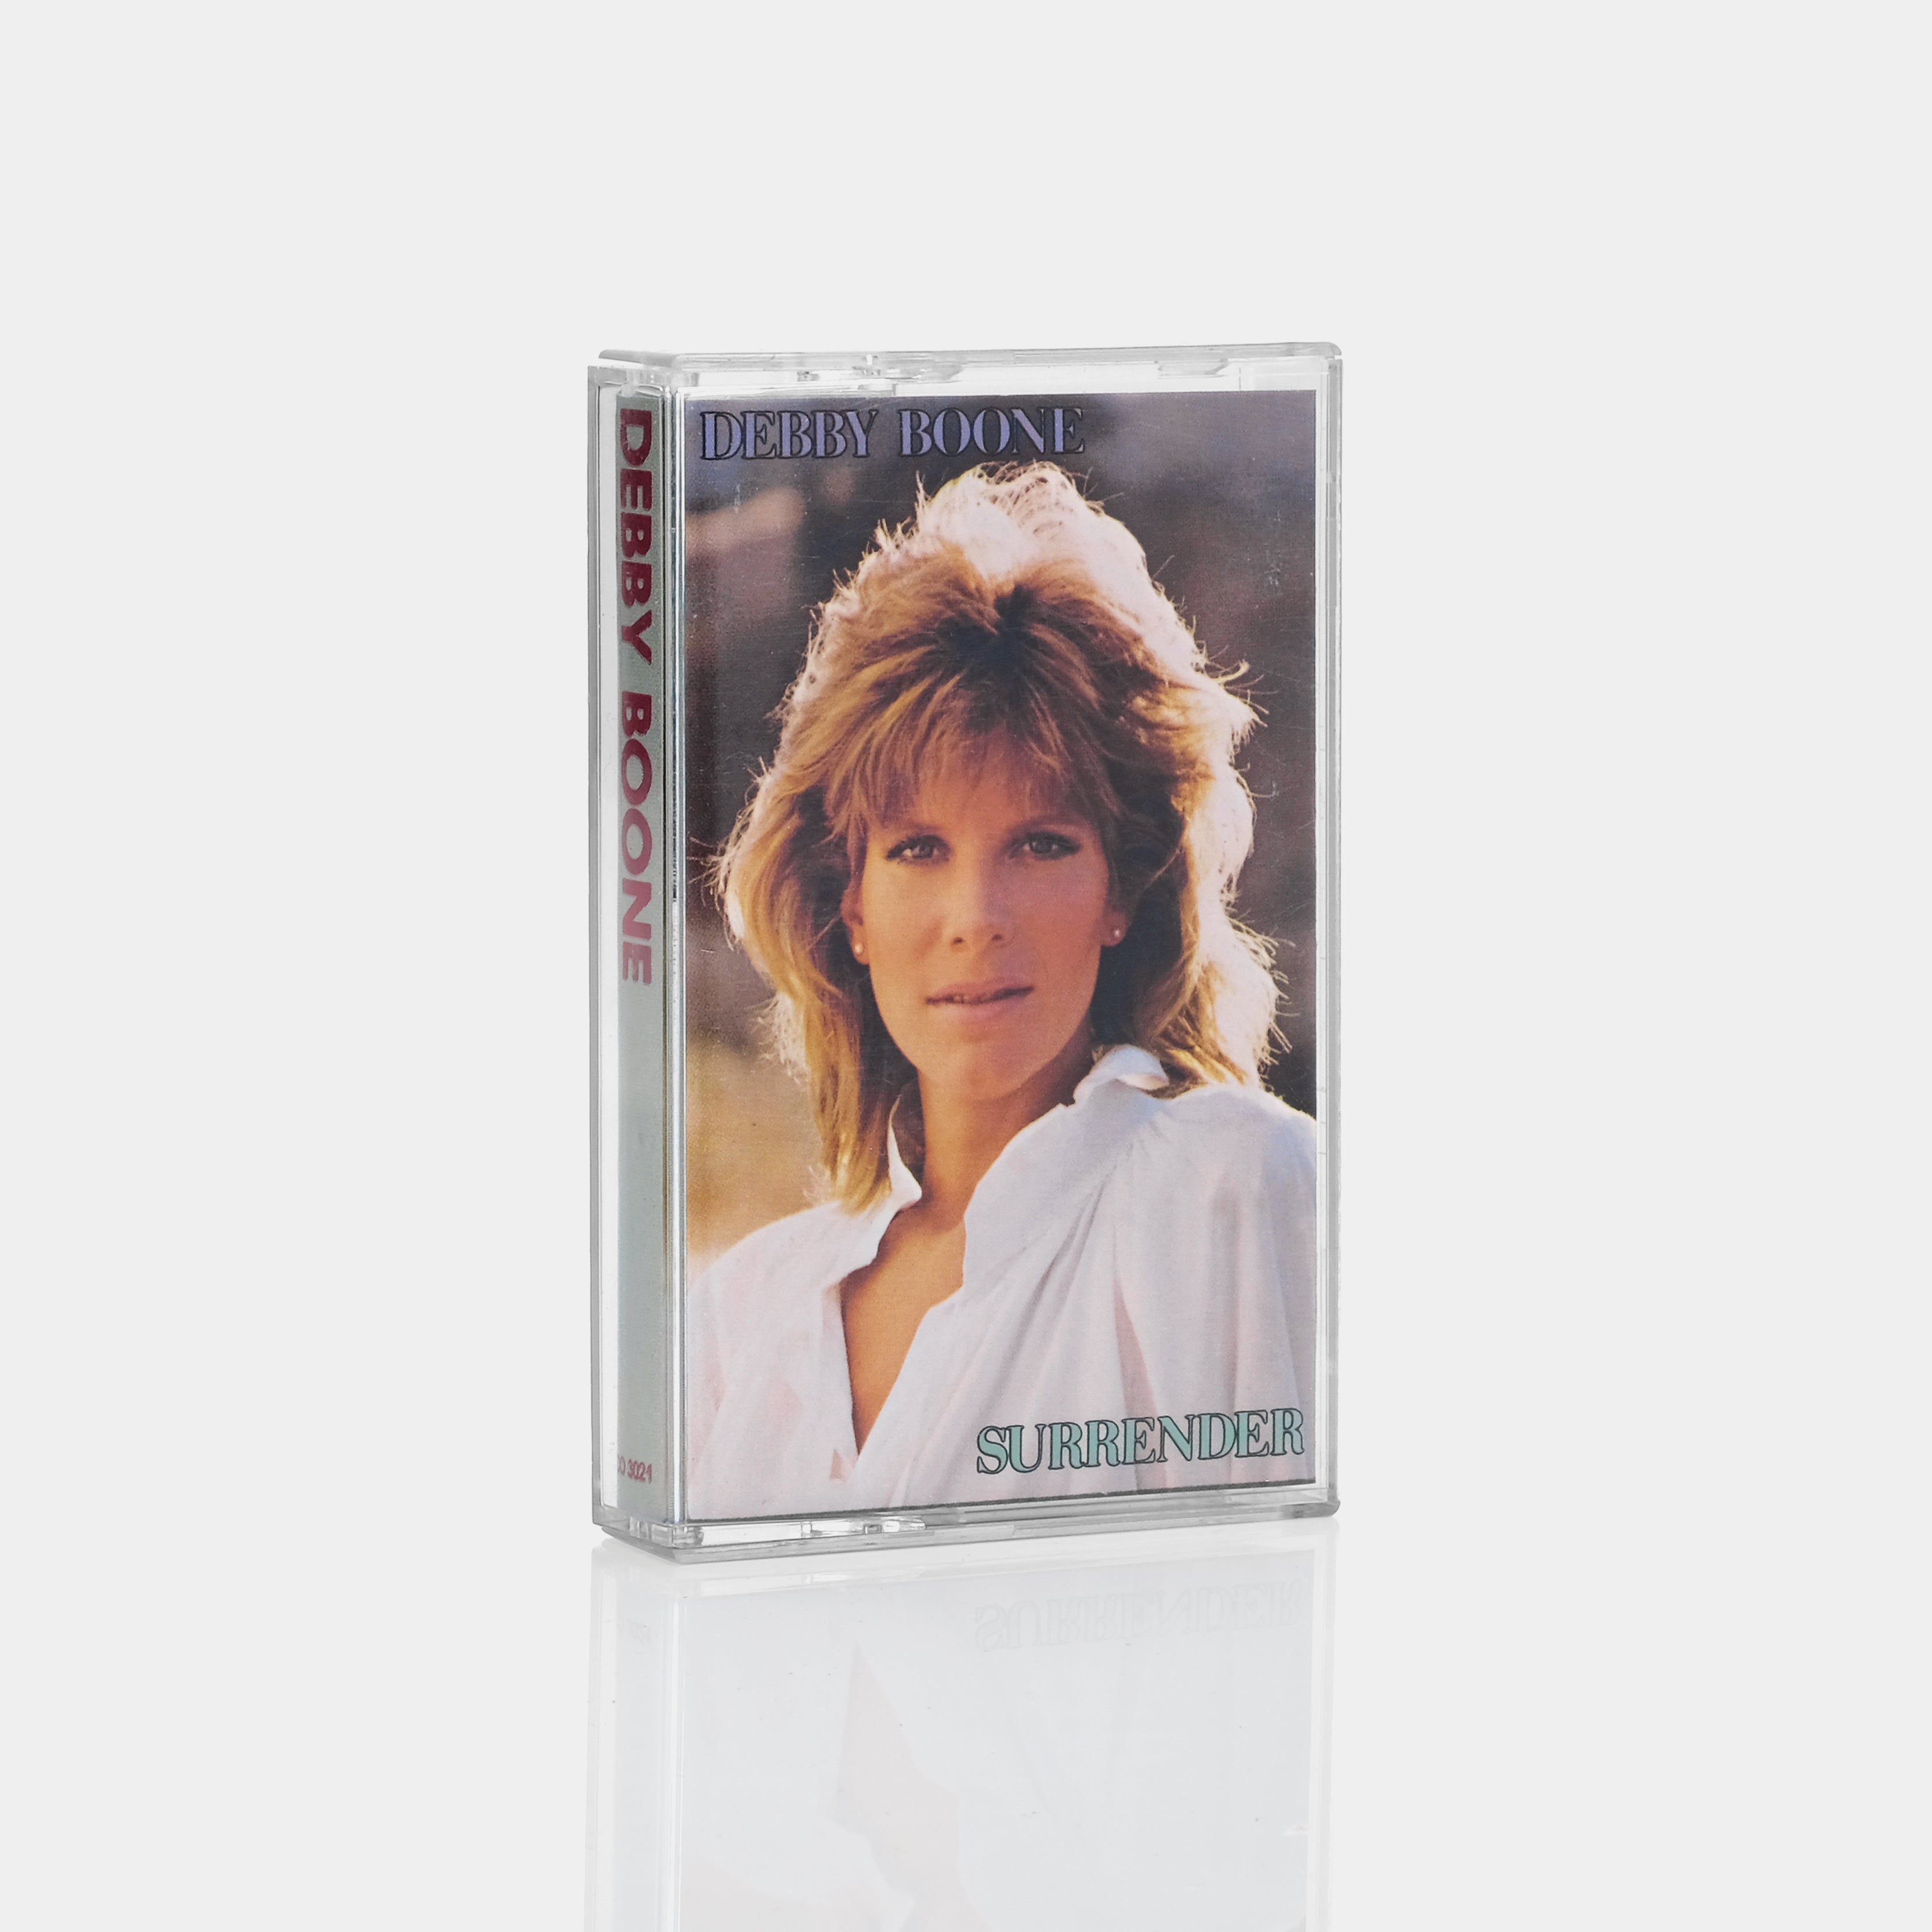 Debby Boone - Surrender Cassette Tape